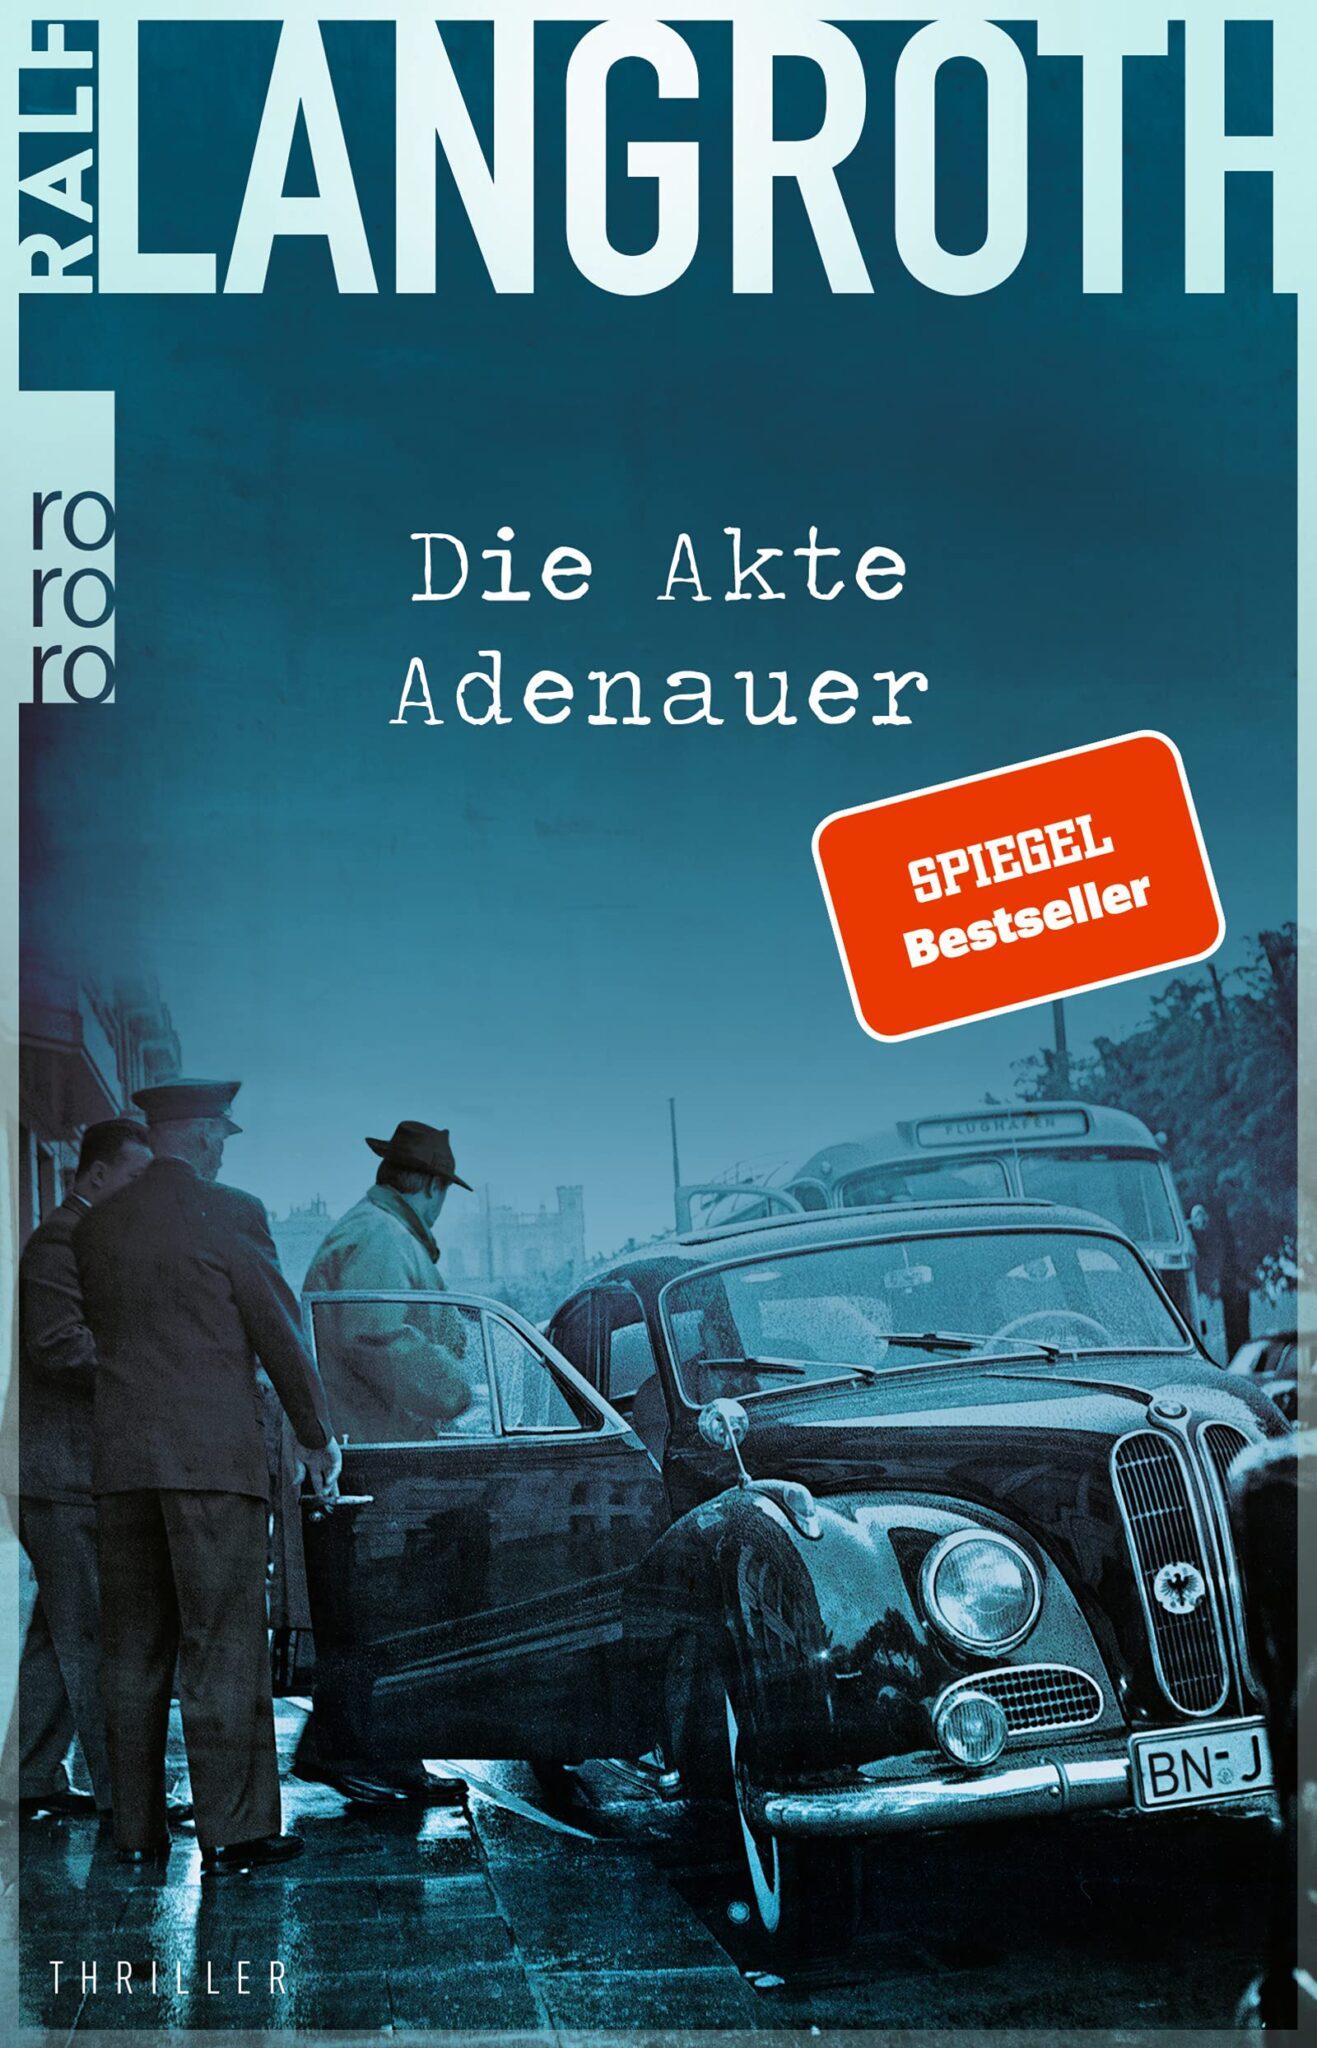 Buchcover „Die Akte Adenauer“ von Ralf Langroth